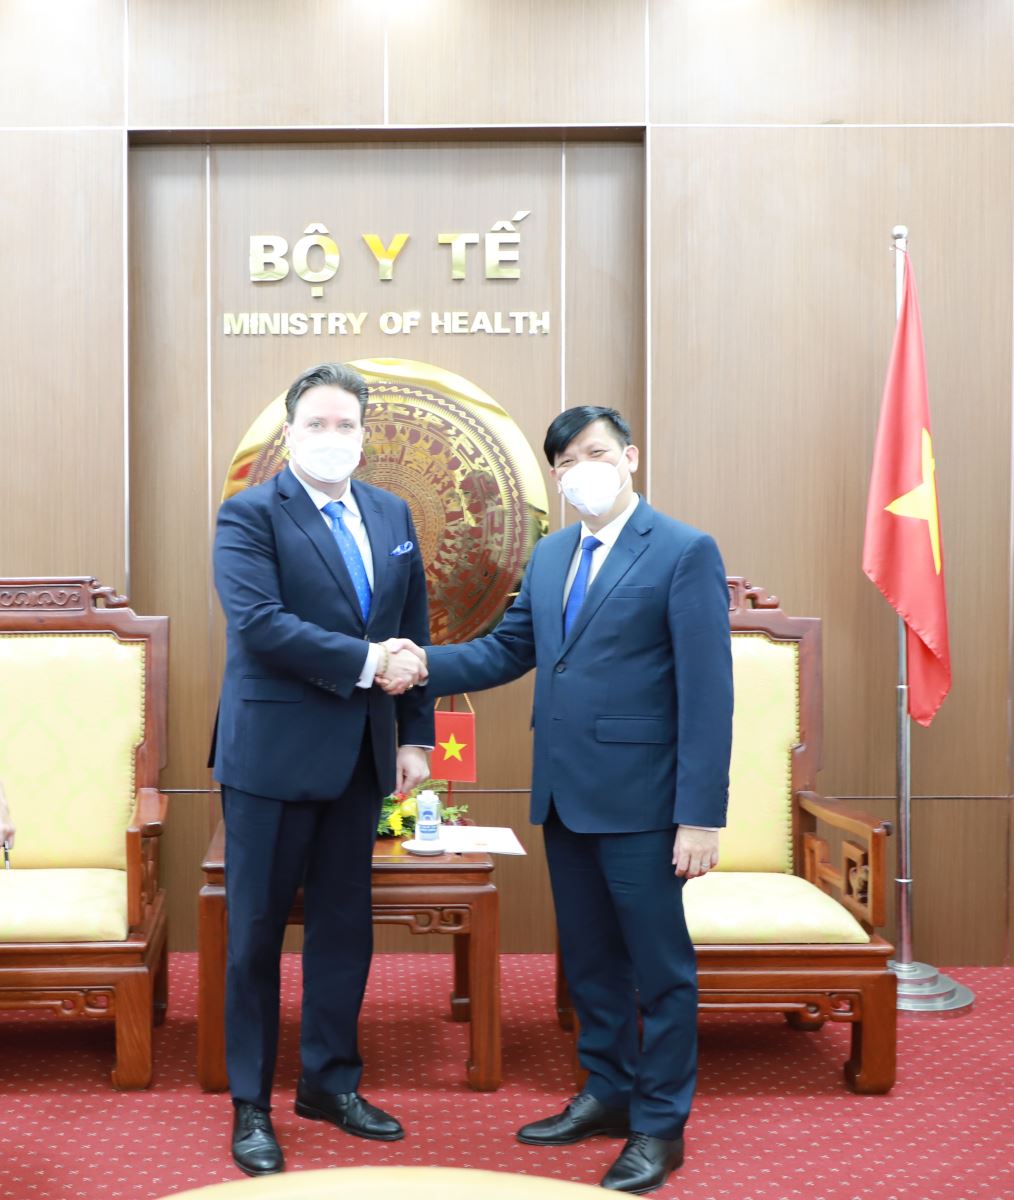 Bộ trưởng Bộ Y tế Nguyễn Thanh Long tiếp tân Đại sứ Hoa Kỳ tại Việt Nam Marc Knapper đến chào xã giao